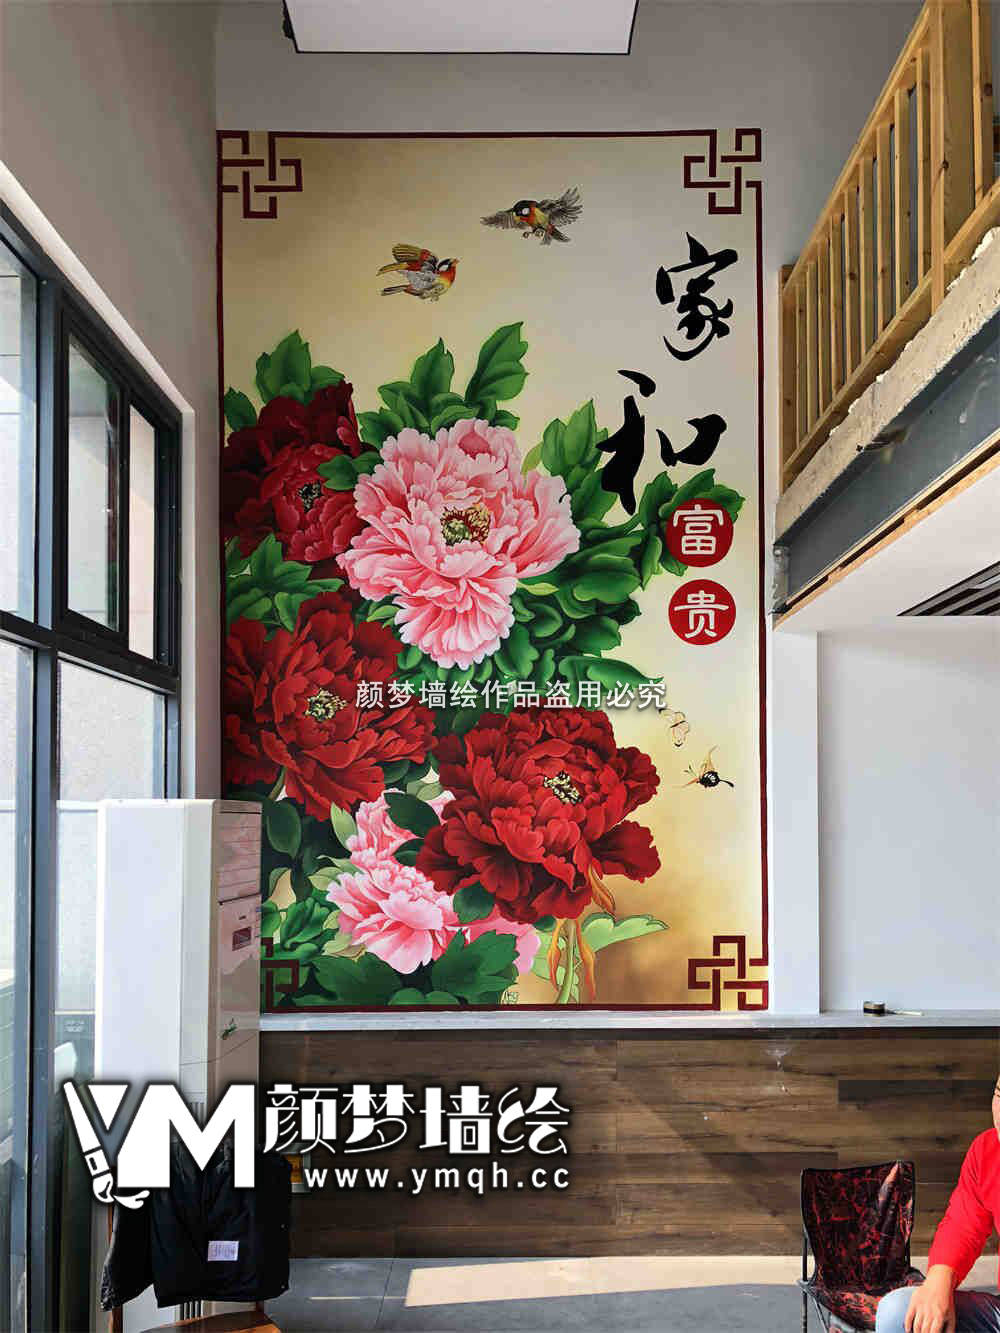 南宁高新技术产业开发区墙体彩绘探秘——连畴村墙绘公司打造“网红墙”新地标